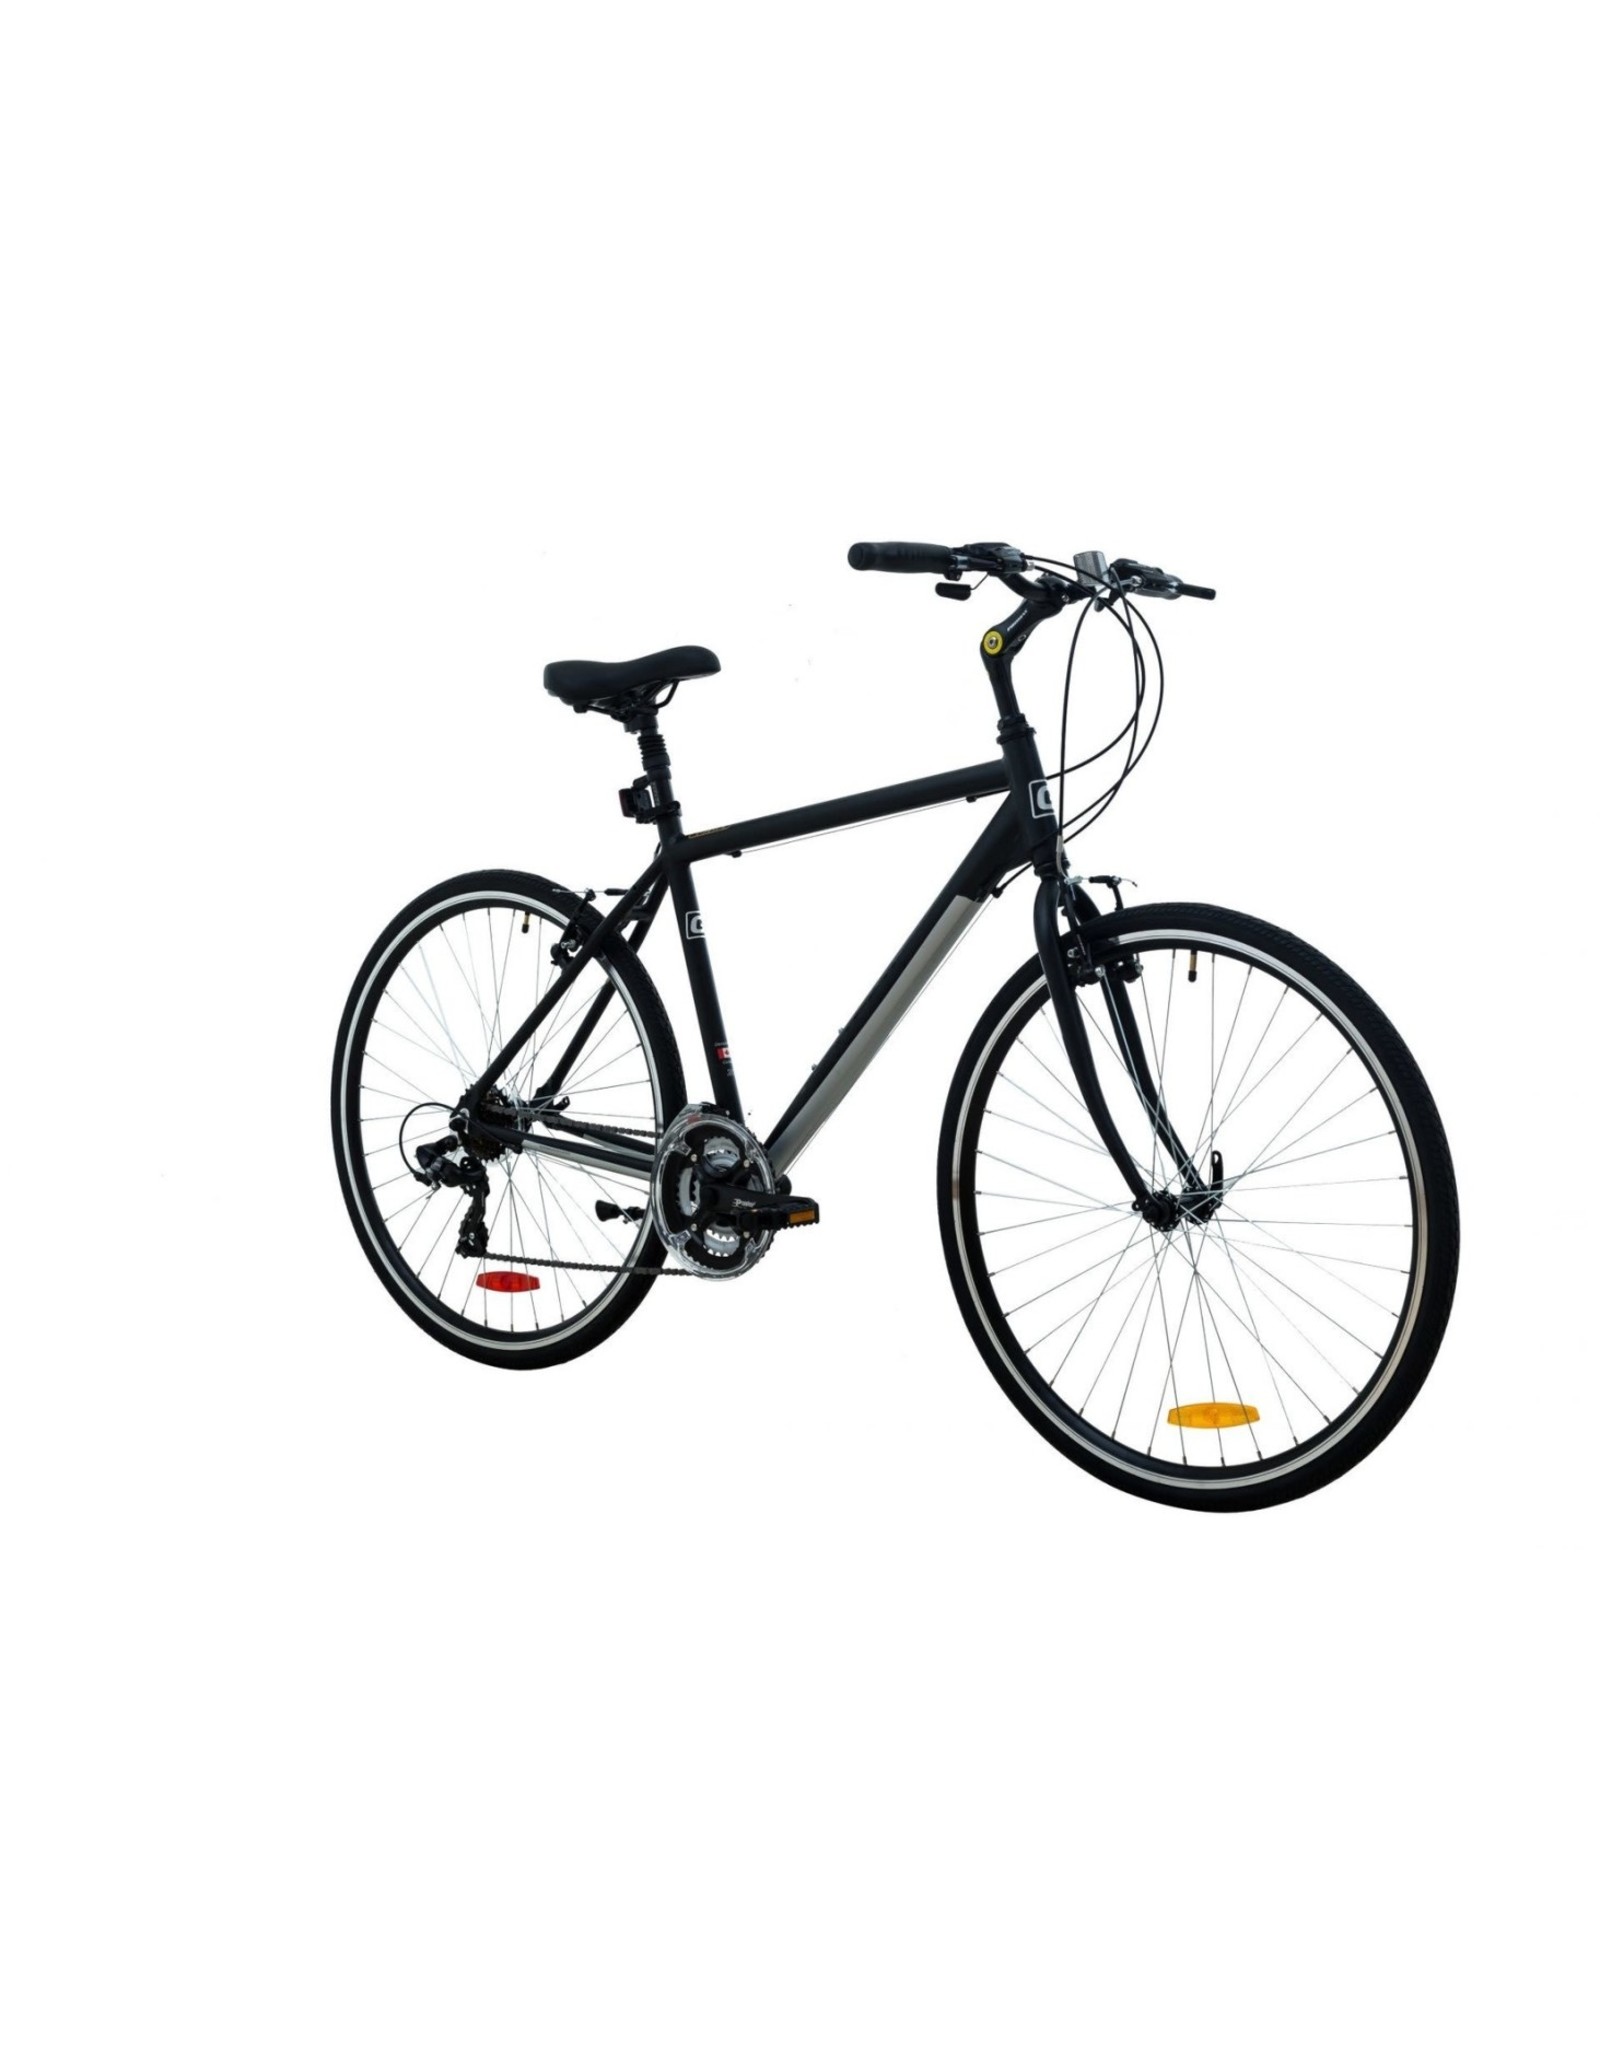 Genesis Vélo Genesis TRAFIK 1.0 S.E taille 20'' 21 vit. noir/gris